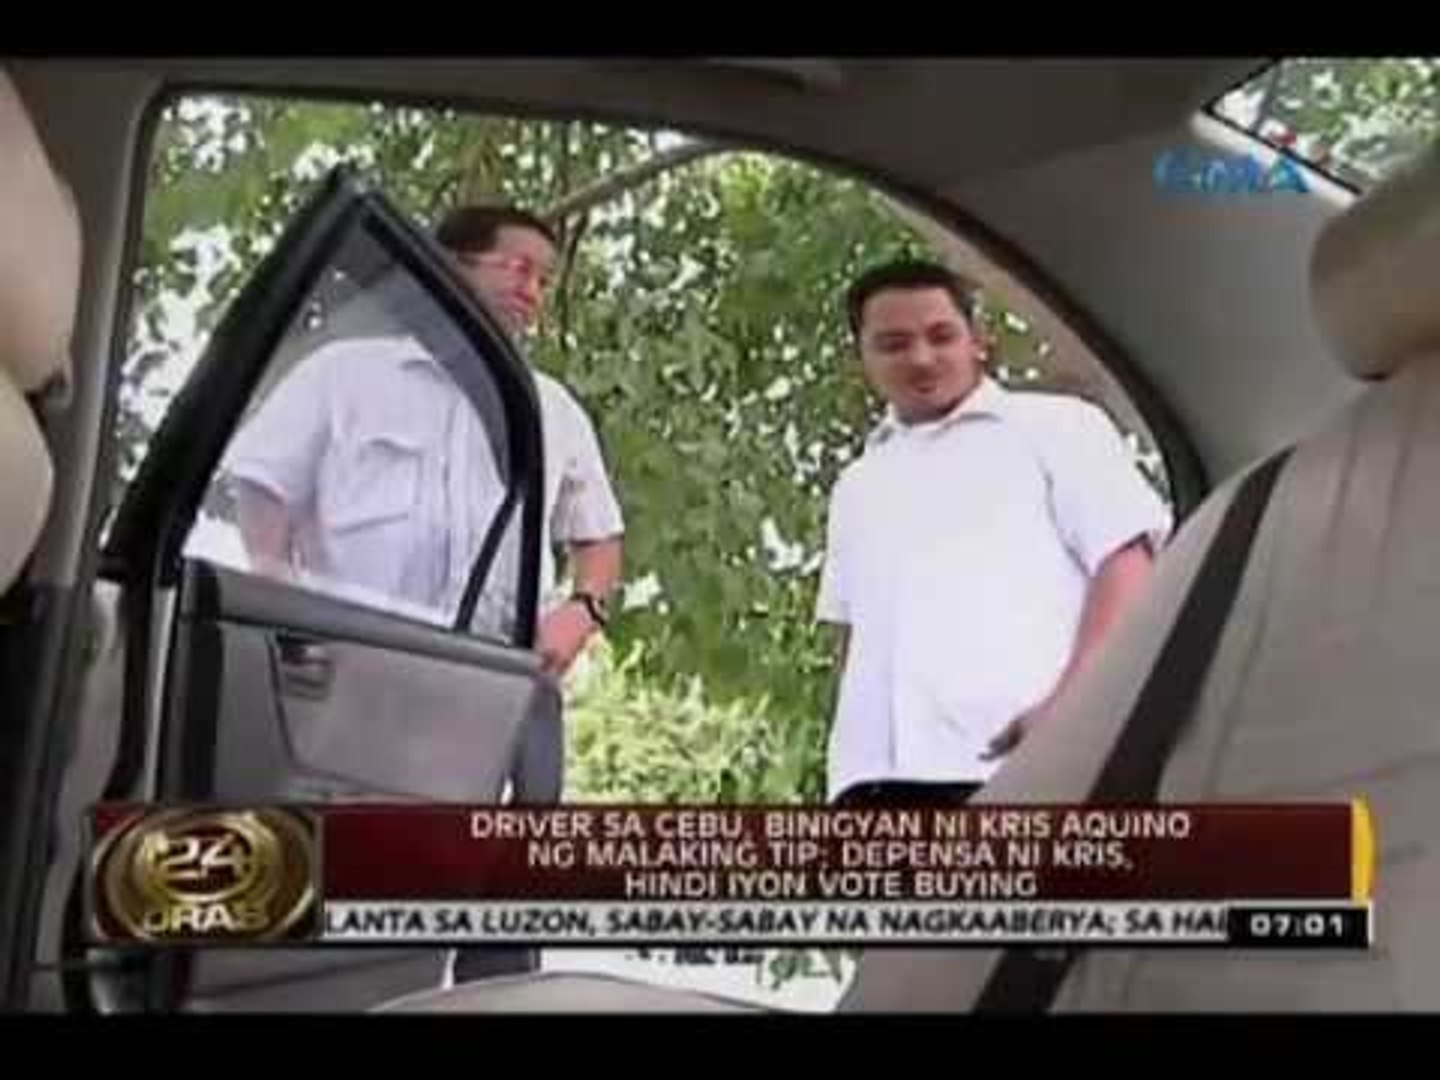 Driver sa Cebu, binigyan ni Kris Aquino ng malaking tip; depensa ni Kris, hindi iyon vote buying